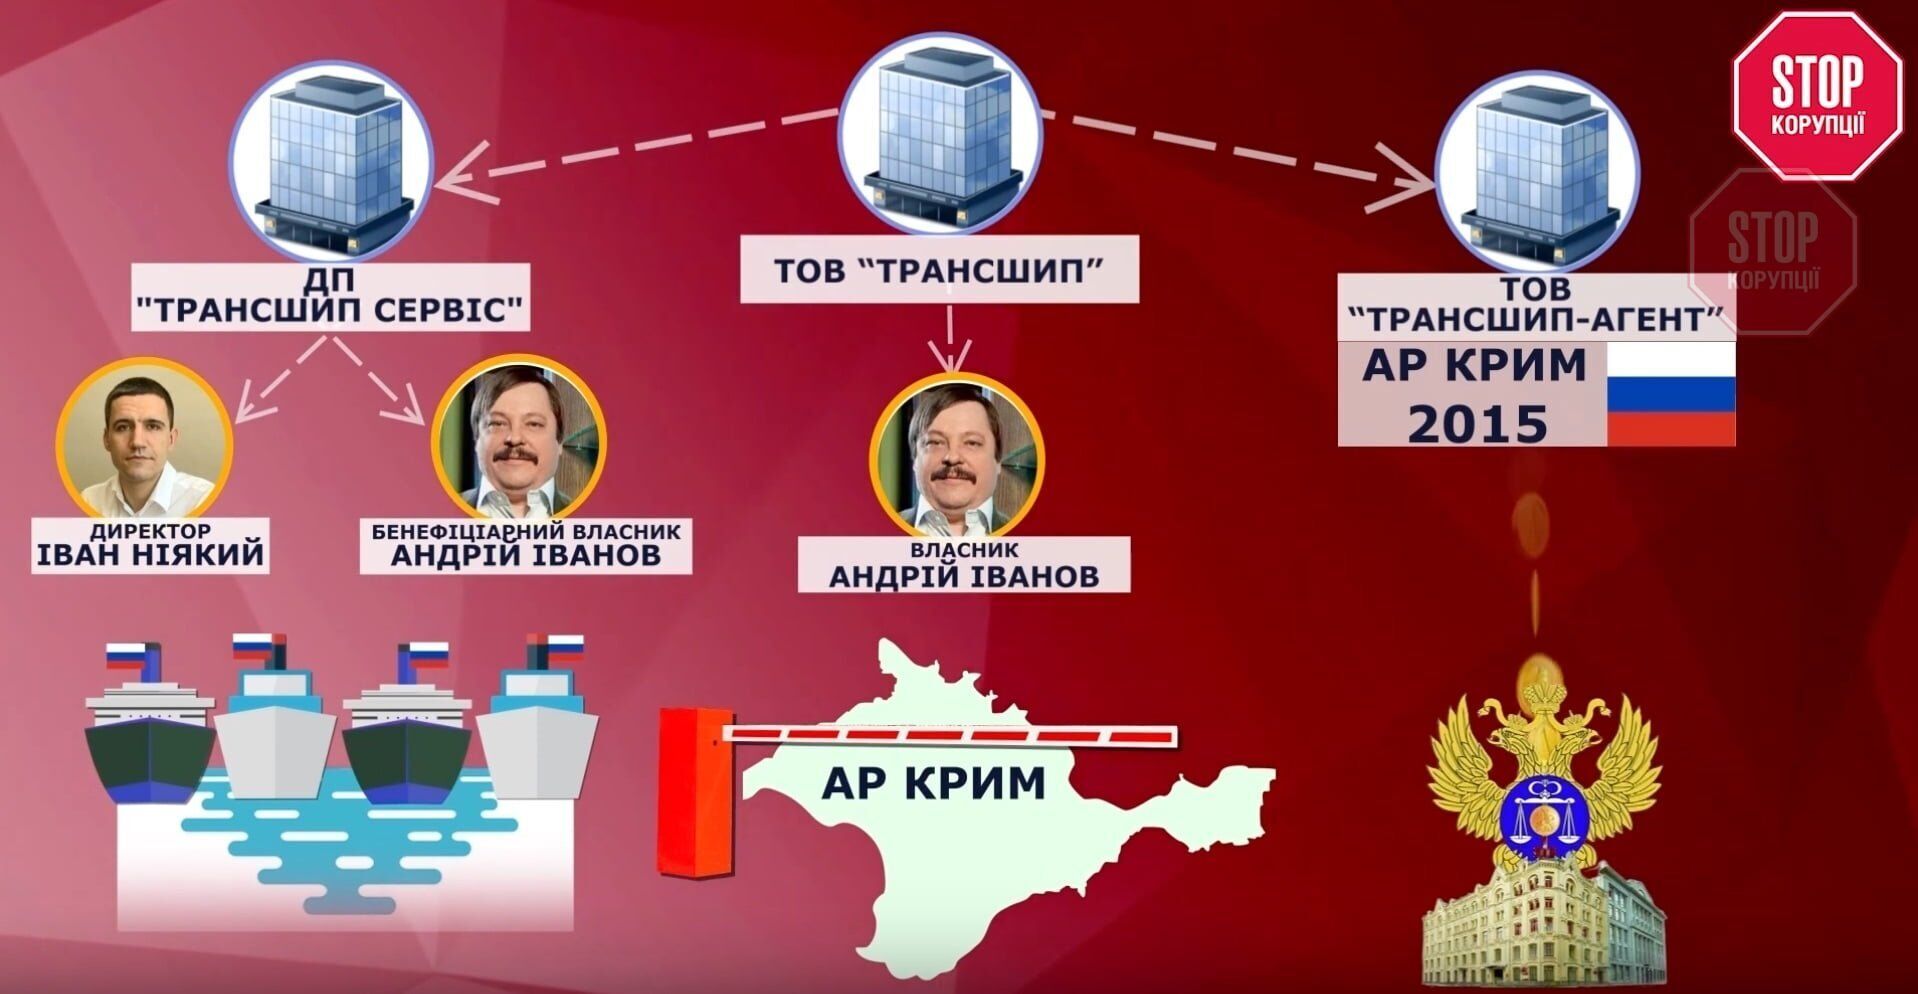  ТОВ ''Трансшип'' фігурує у кількох справах, пов'язаних з незаконним обслуговуванням російських суден Фото: СтопКор